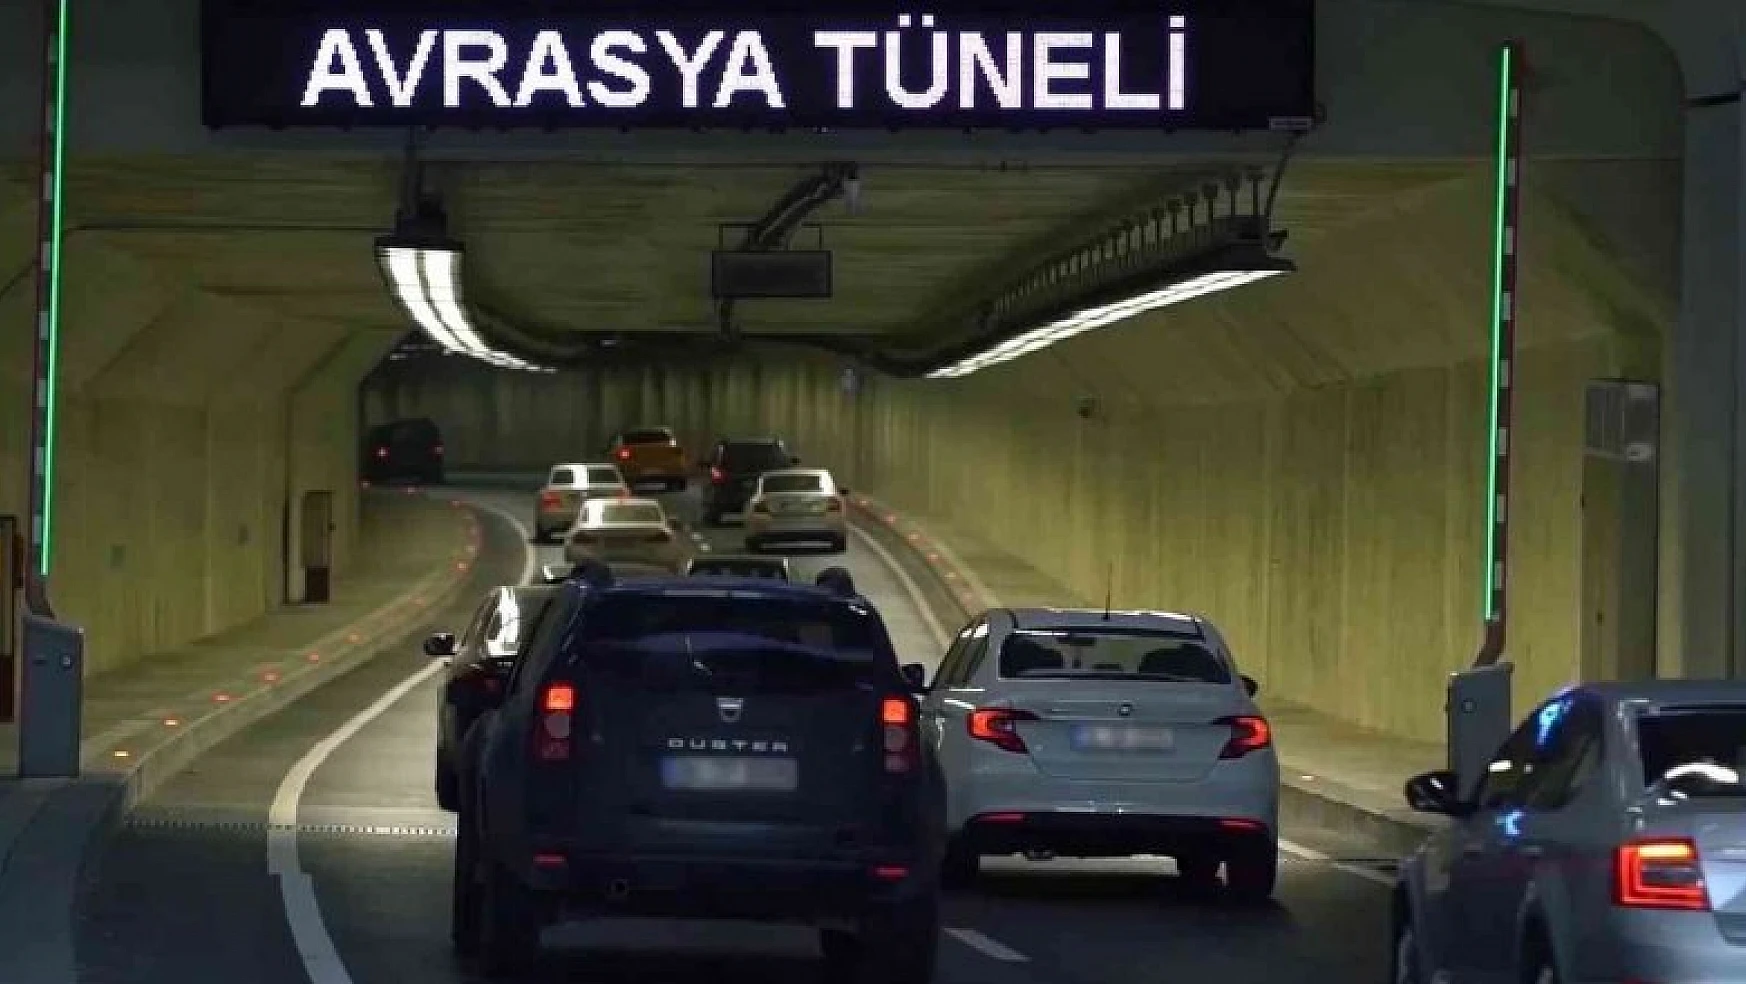 Avrasya Tüneli'nden motosikletler için tek yön geçiş ücretleri gündüz 20,70 TL gece ise 10,35 TL olarak belirlendi